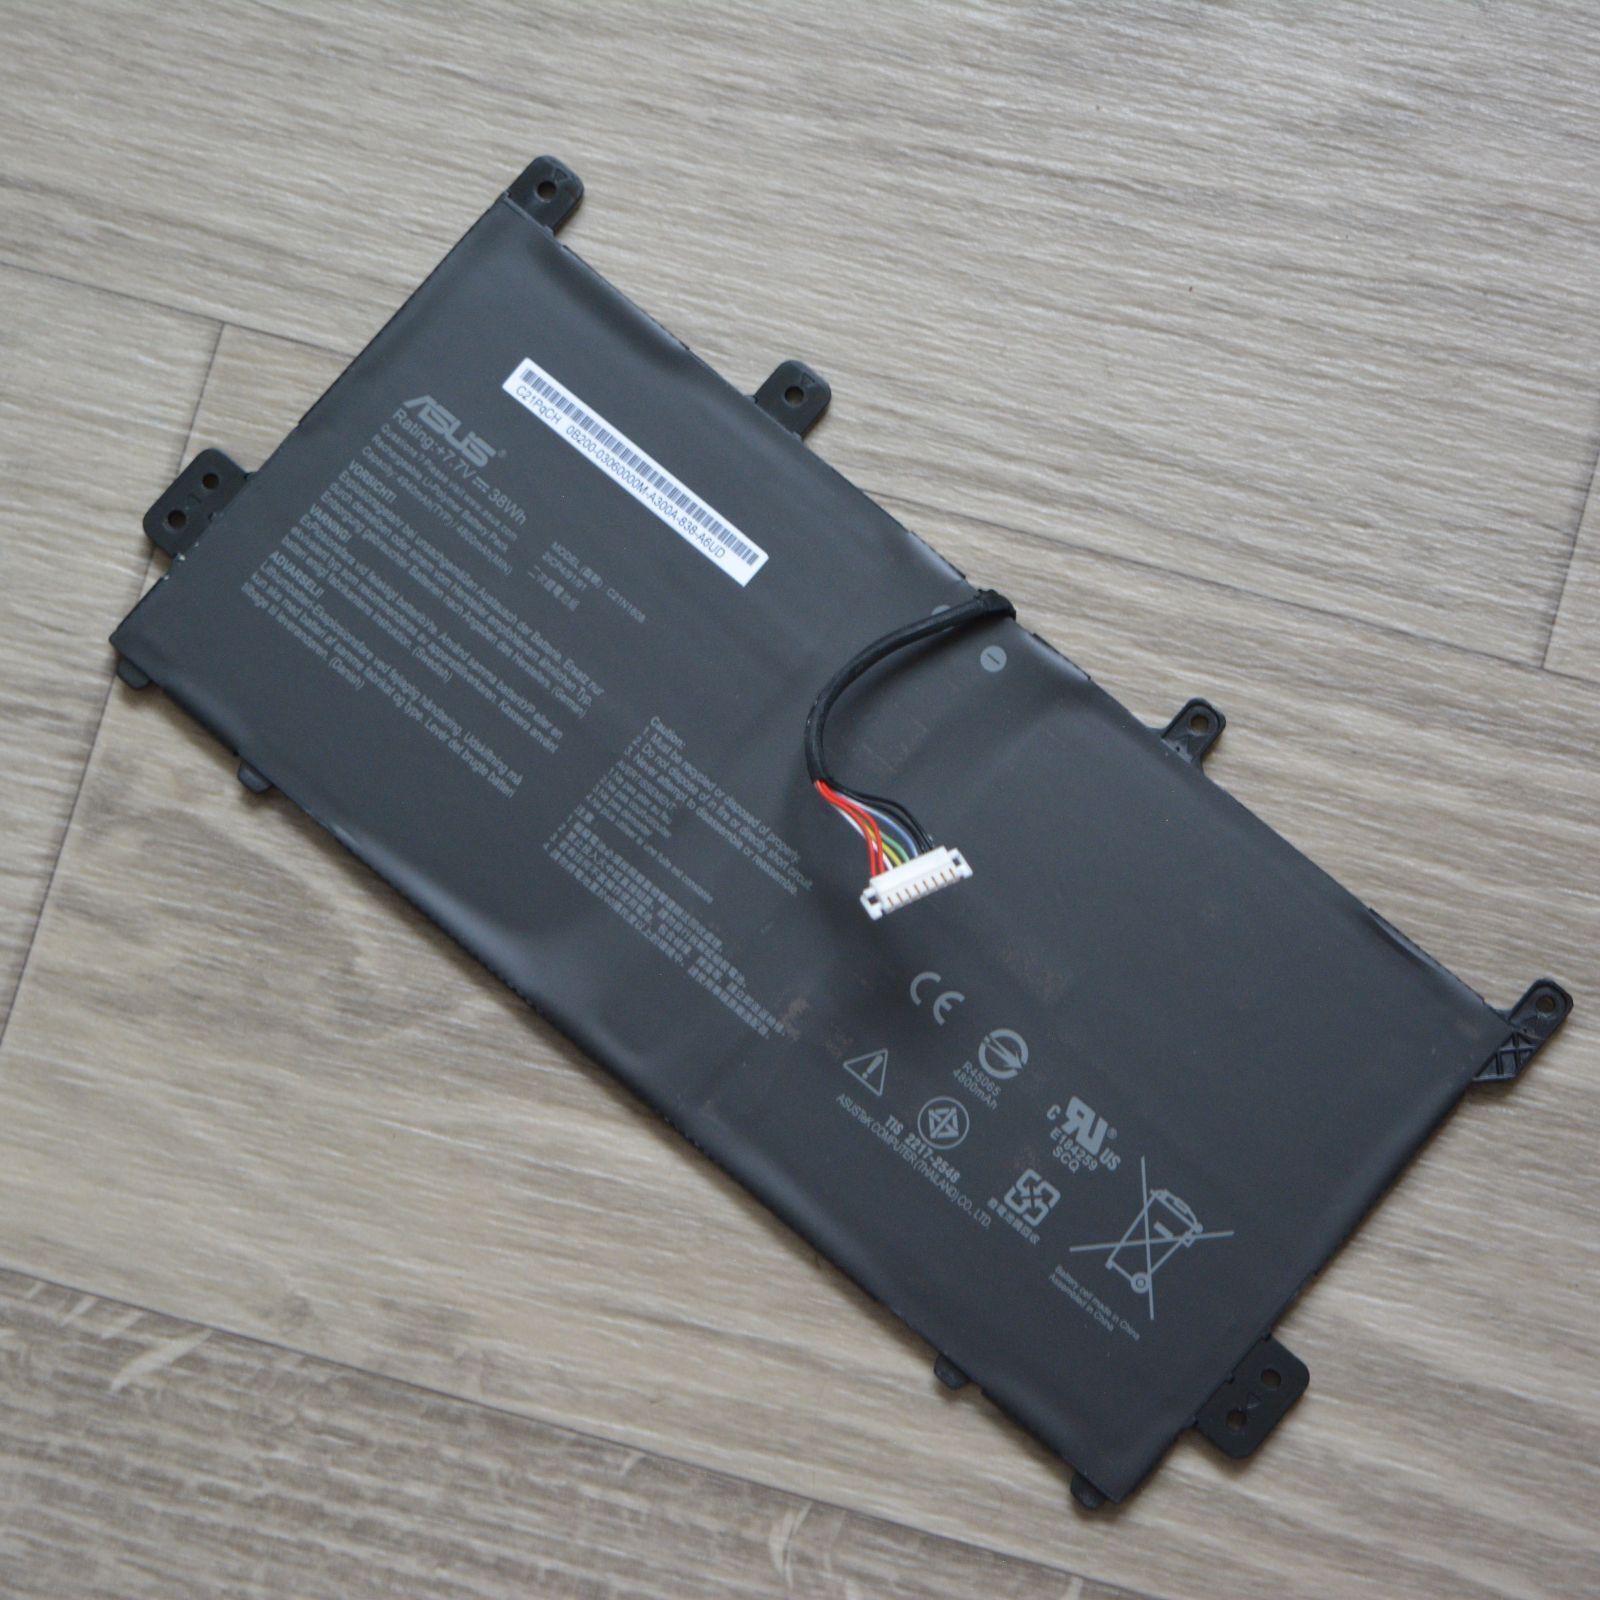 Original ASUS Chromebook Battery 7.7 V 38 Wh 8-Pin C21N1808 C21PqCH 0B200 030600